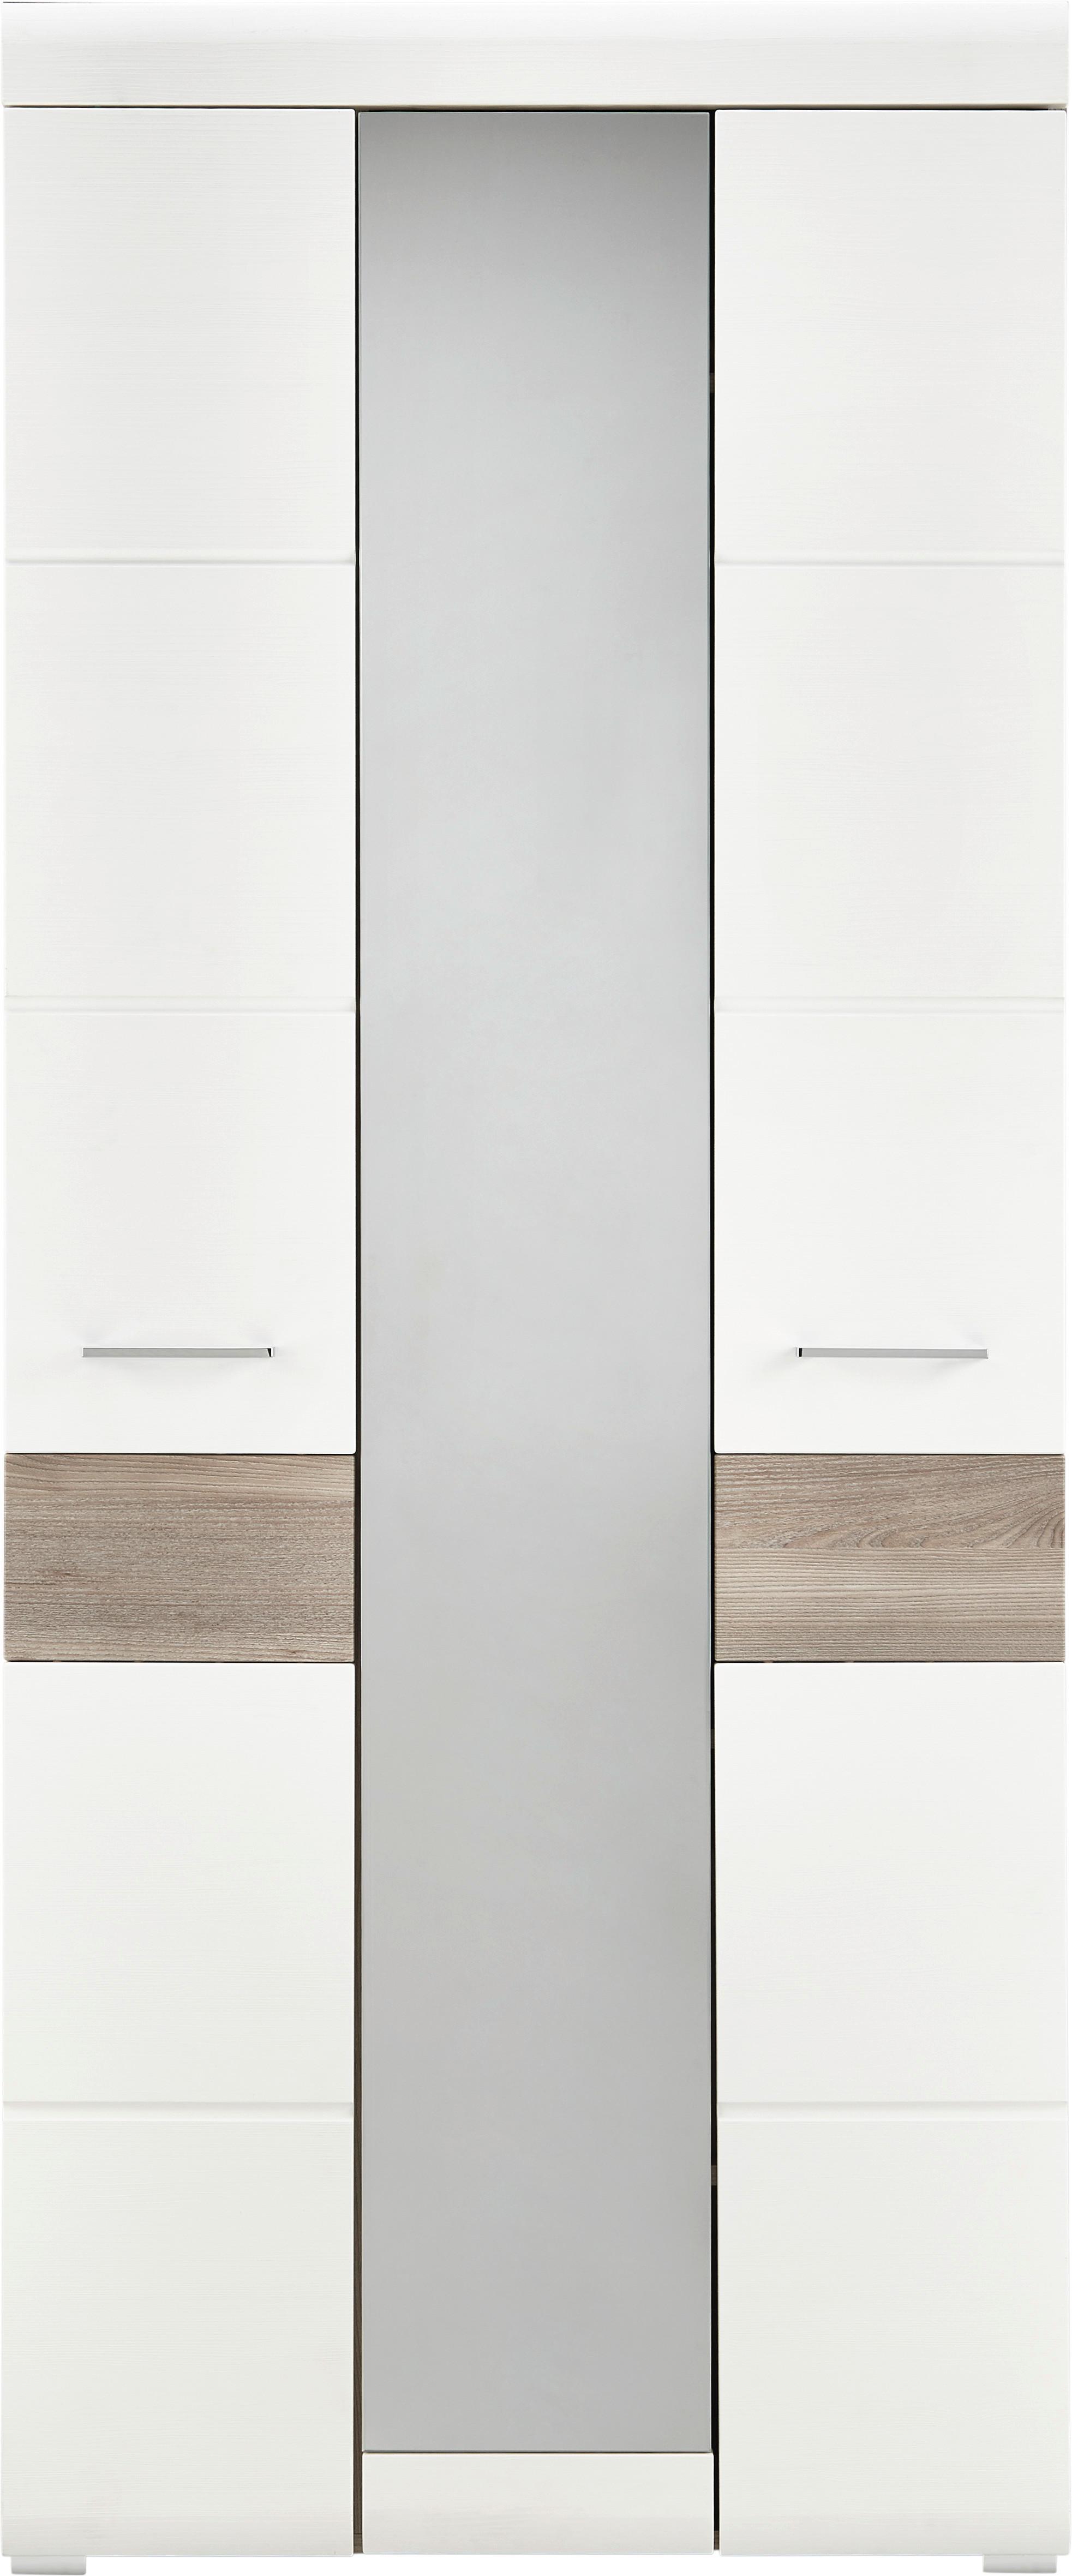 Garderobenschrank in Silbereiche/Weiß - Chromfarben/Weiß, MODERN, Holz/Holzwerkstoff (85/200/40cm) - Premium Living